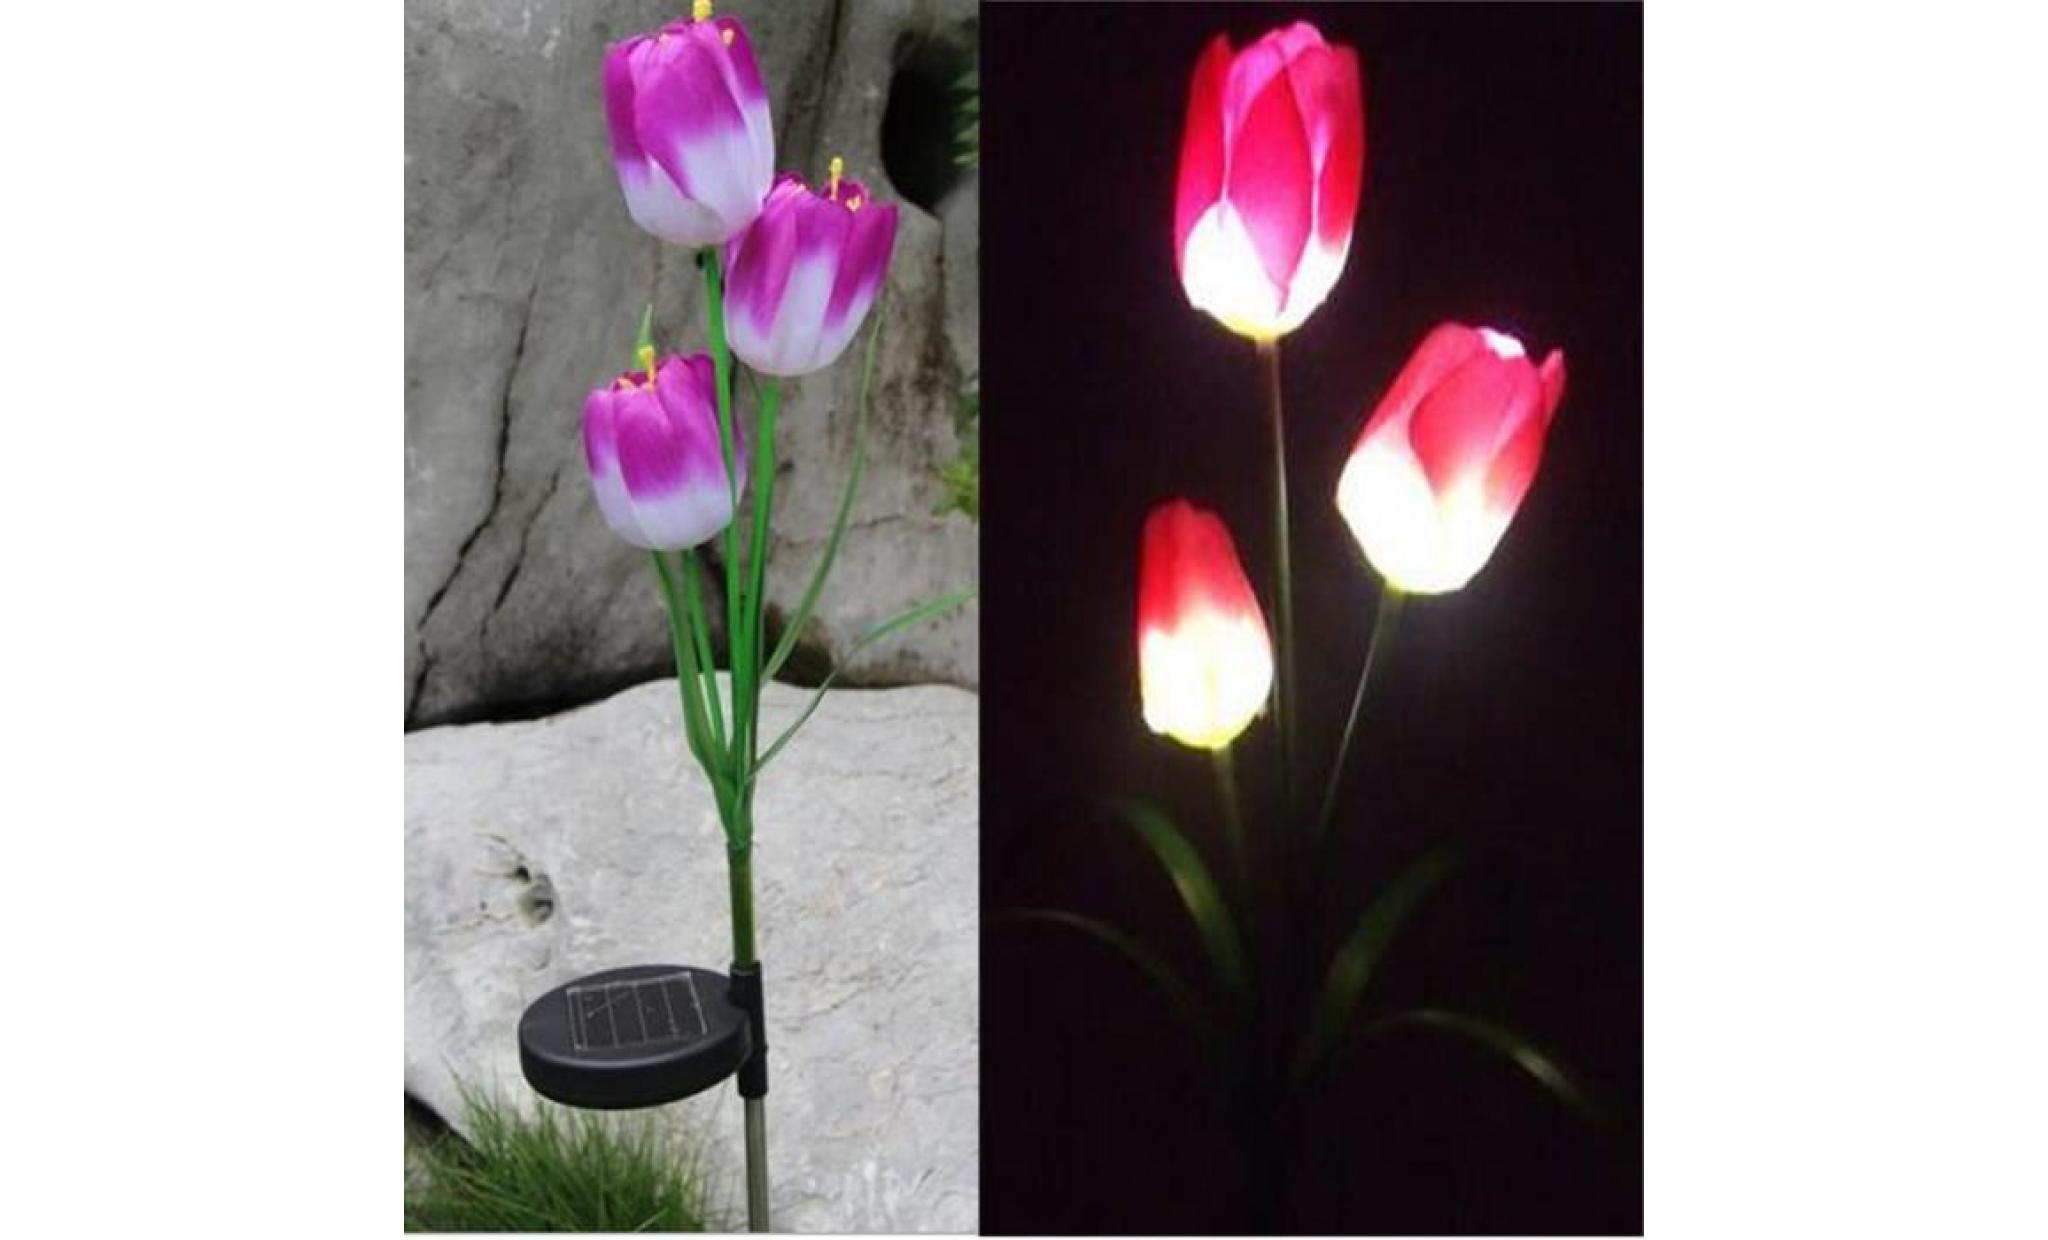 neufu 3 led energie solaire lampe lumière tulipe fleur pour jardin cour extérieur chemin violet blanc